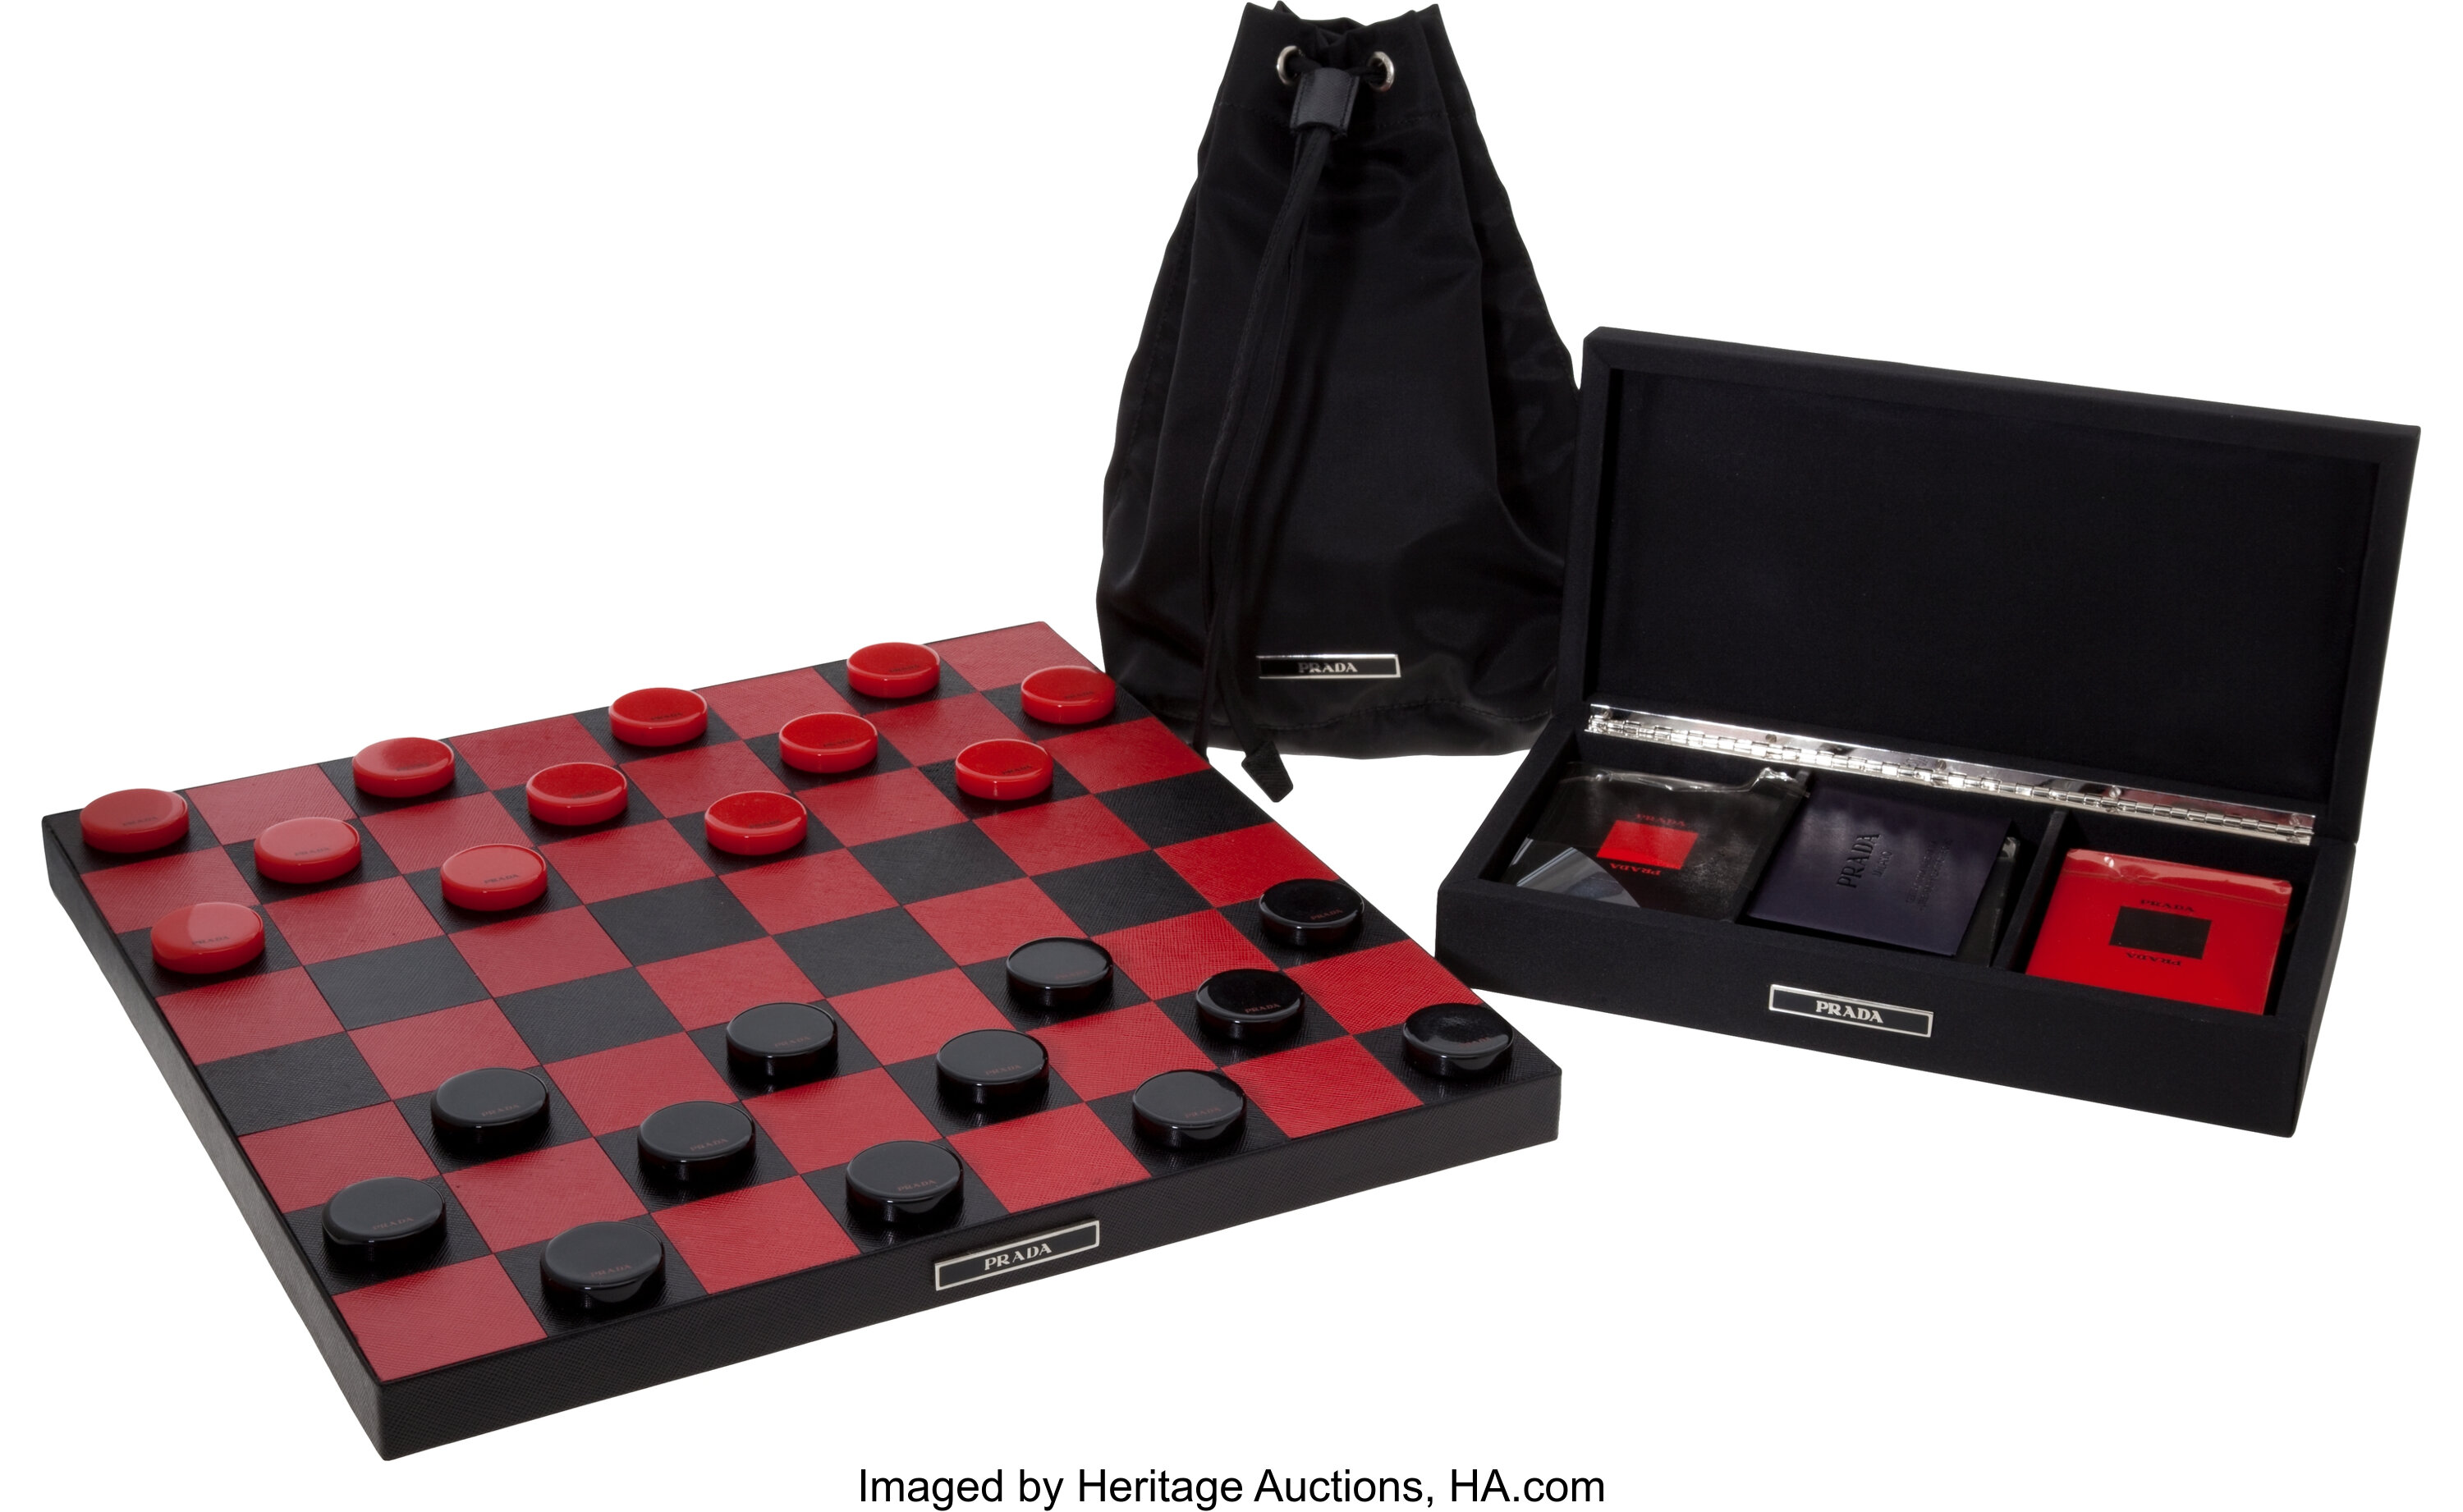 Prada Saffiano Leather Checkers Set - Acquire